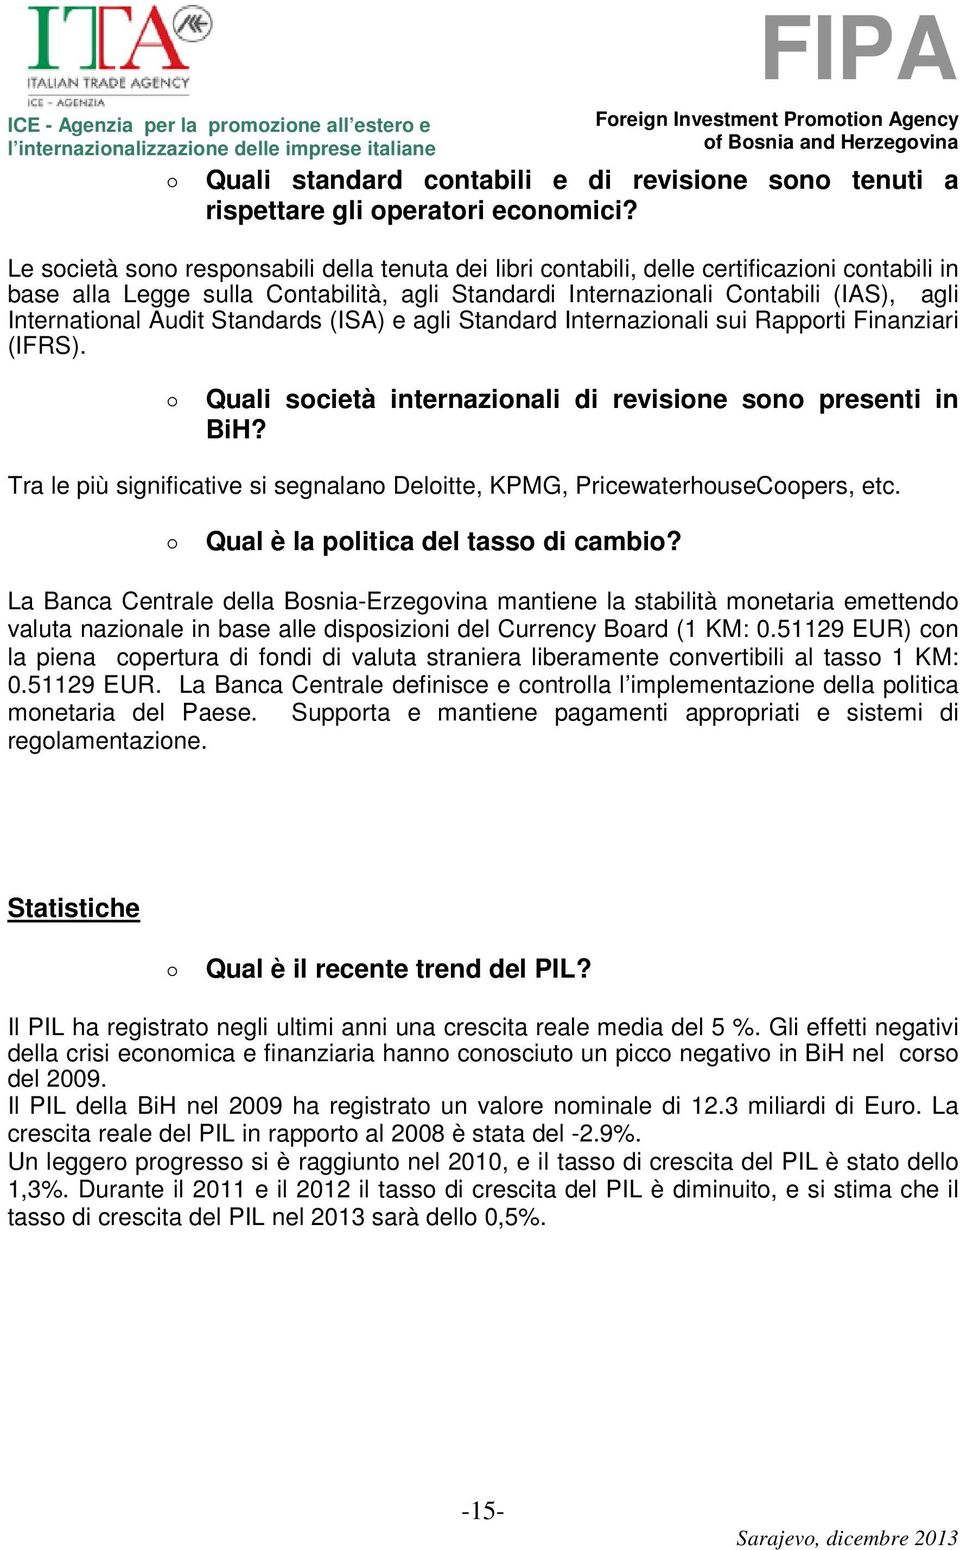 Audit Standards (ISA) e agli Standard Internazionali sui Rapporti Finanziari (IFRS). Quali società internazionali di revisione sono presenti in BiH?